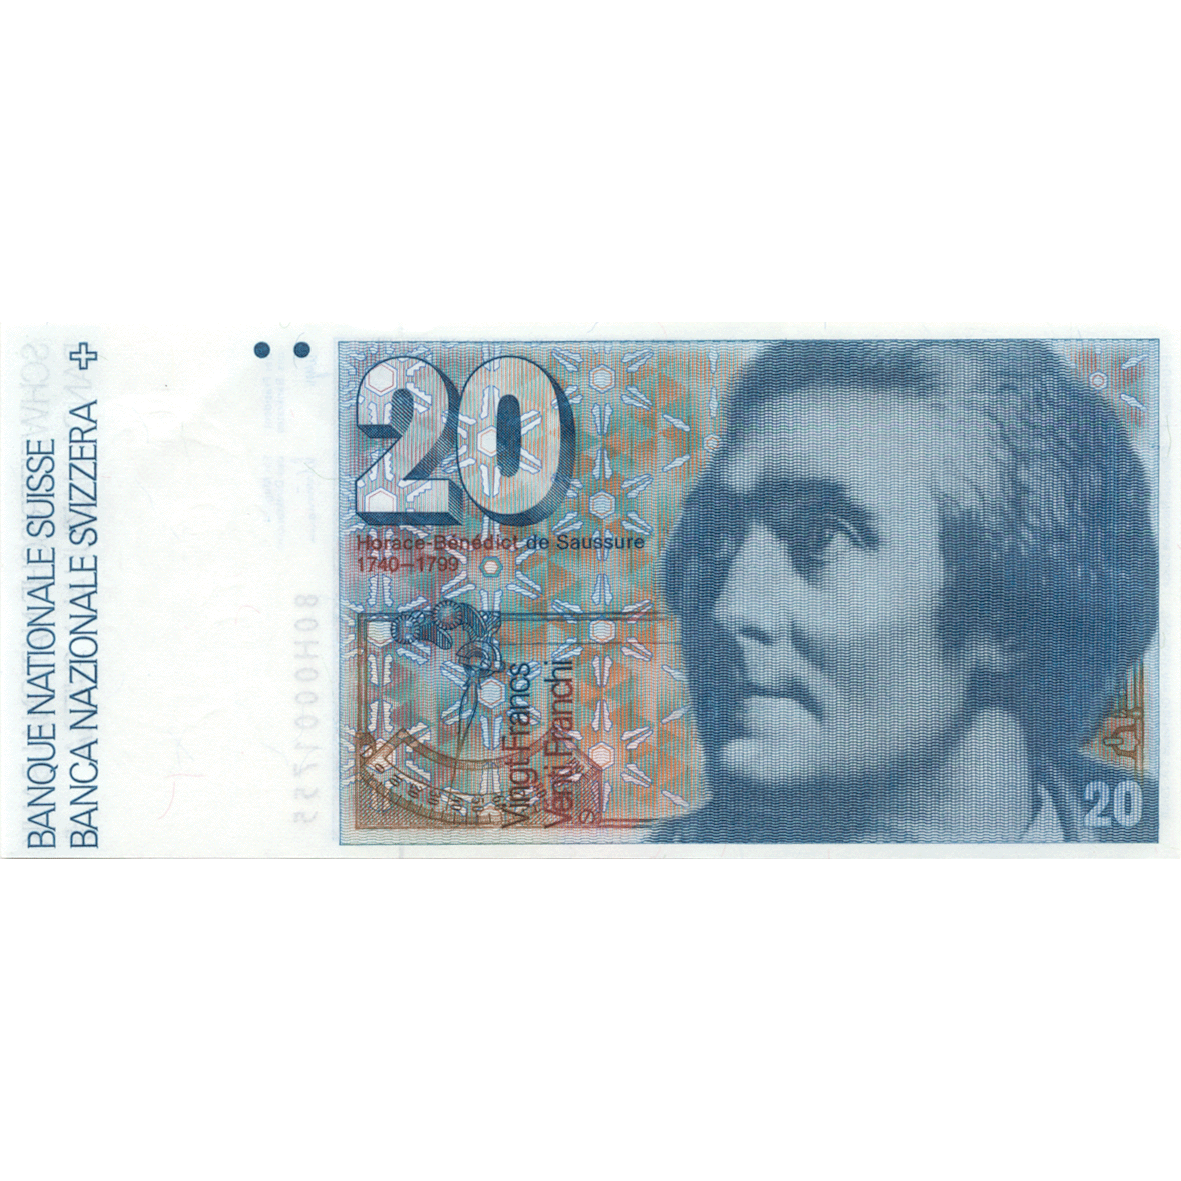 Schweizerische Eidgenossenschaft, 20 Franken (6. Banknotenserie, in Kurs 1976-2000) (obverse)